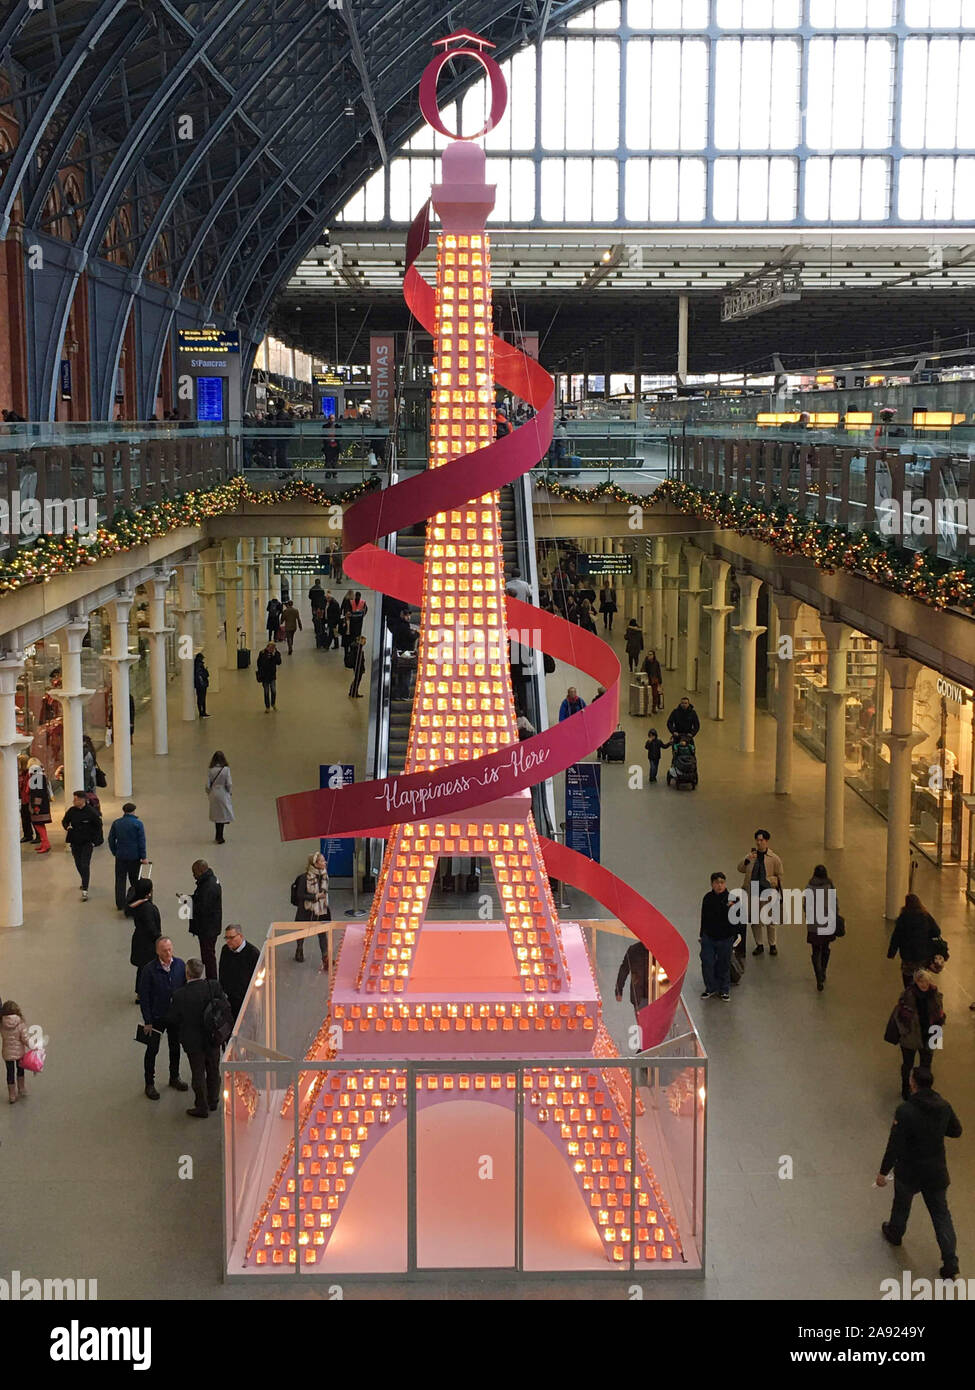 Les 36 pieds de hauteur d'installation de flacons de parfum pétillant sur une Tour Eiffel en forme de sapin de Noël à St Pancras, Londres, qui contient plus de 1 500 bouteilles de prise LANC ? ?moi parfum signature, 'La Vie Est Belle". Banque D'Images